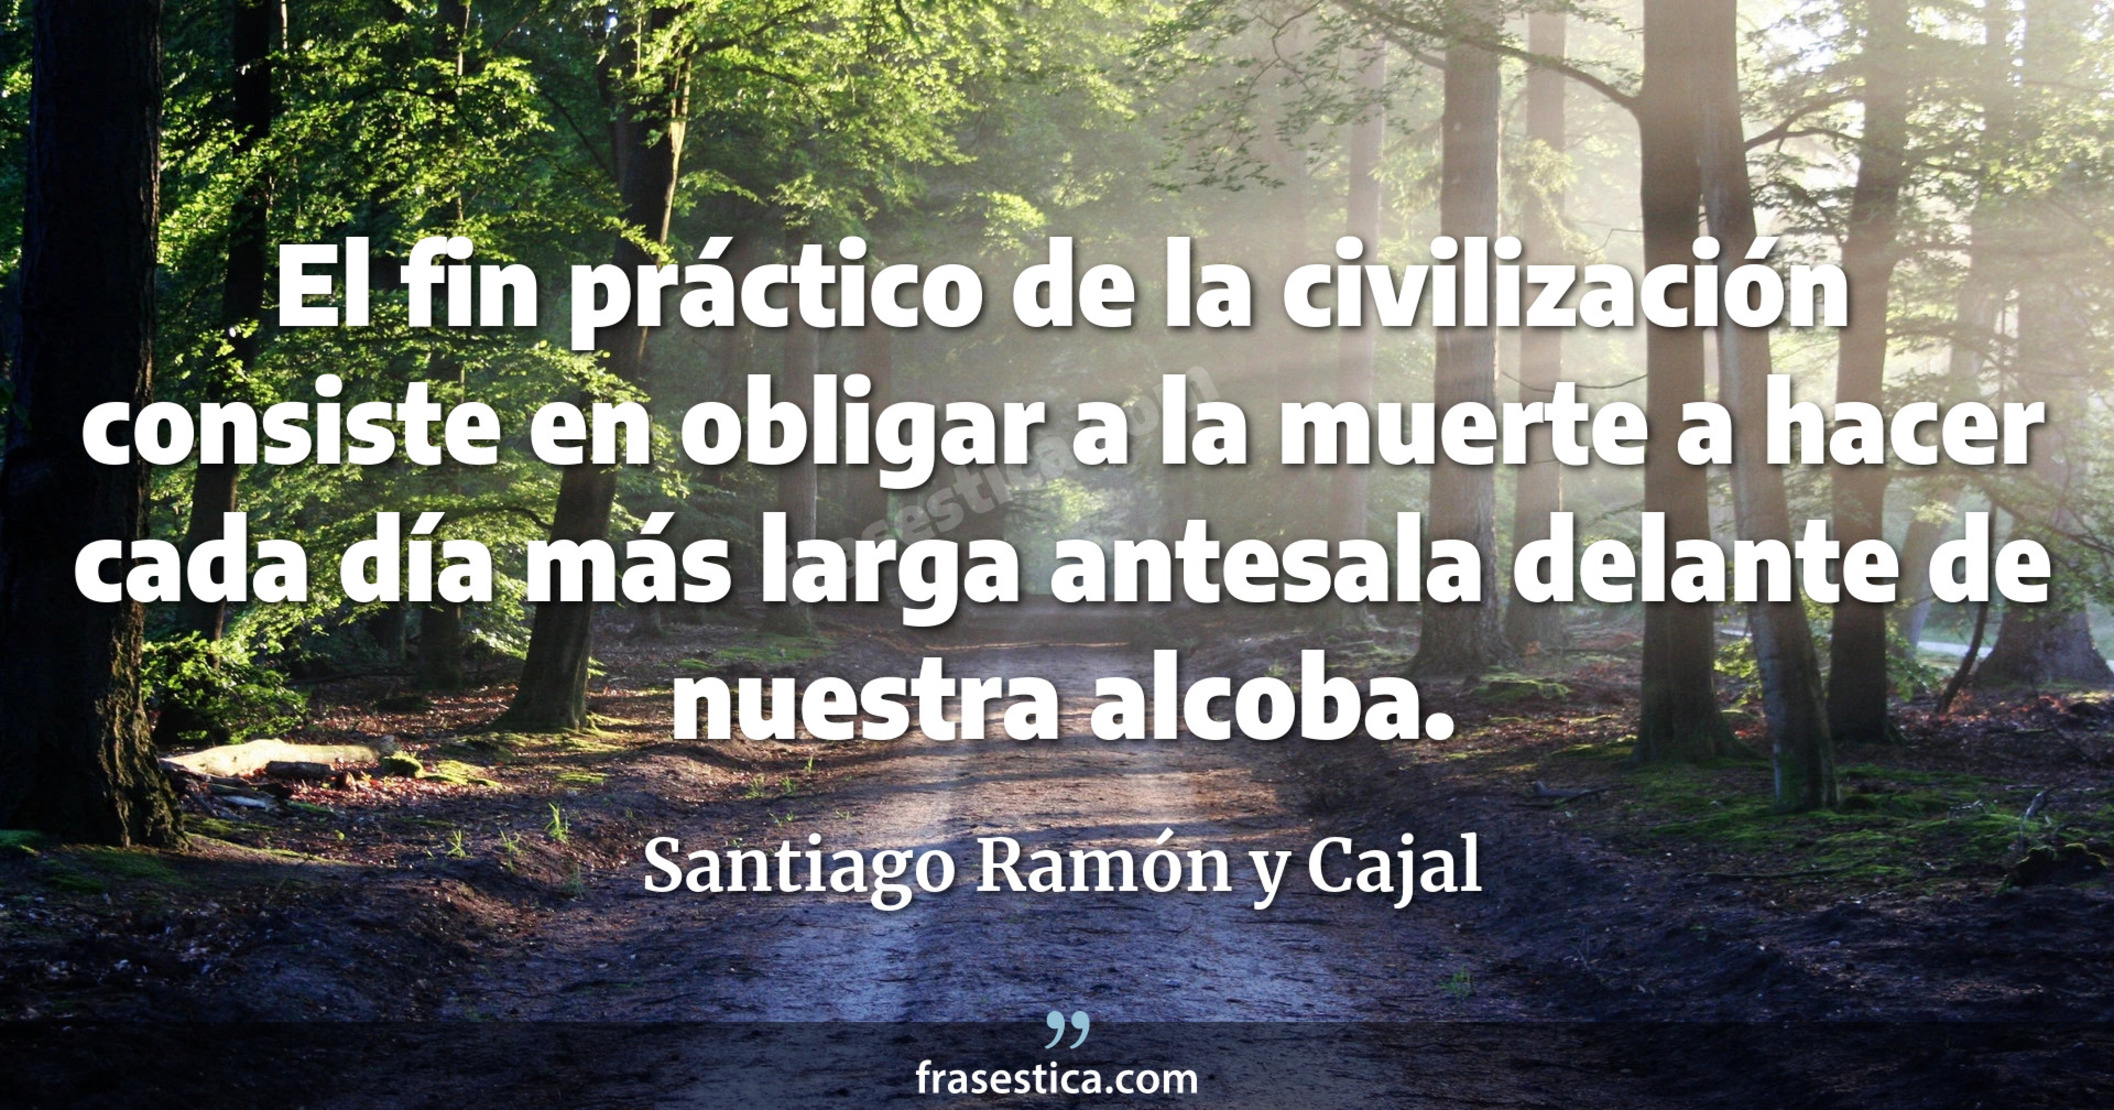 El fin práctico de la civilización consiste en obligar a la muerte a hacer cada día más larga antesala delante de nuestra alcoba. - Santiago Ramón y Cajal